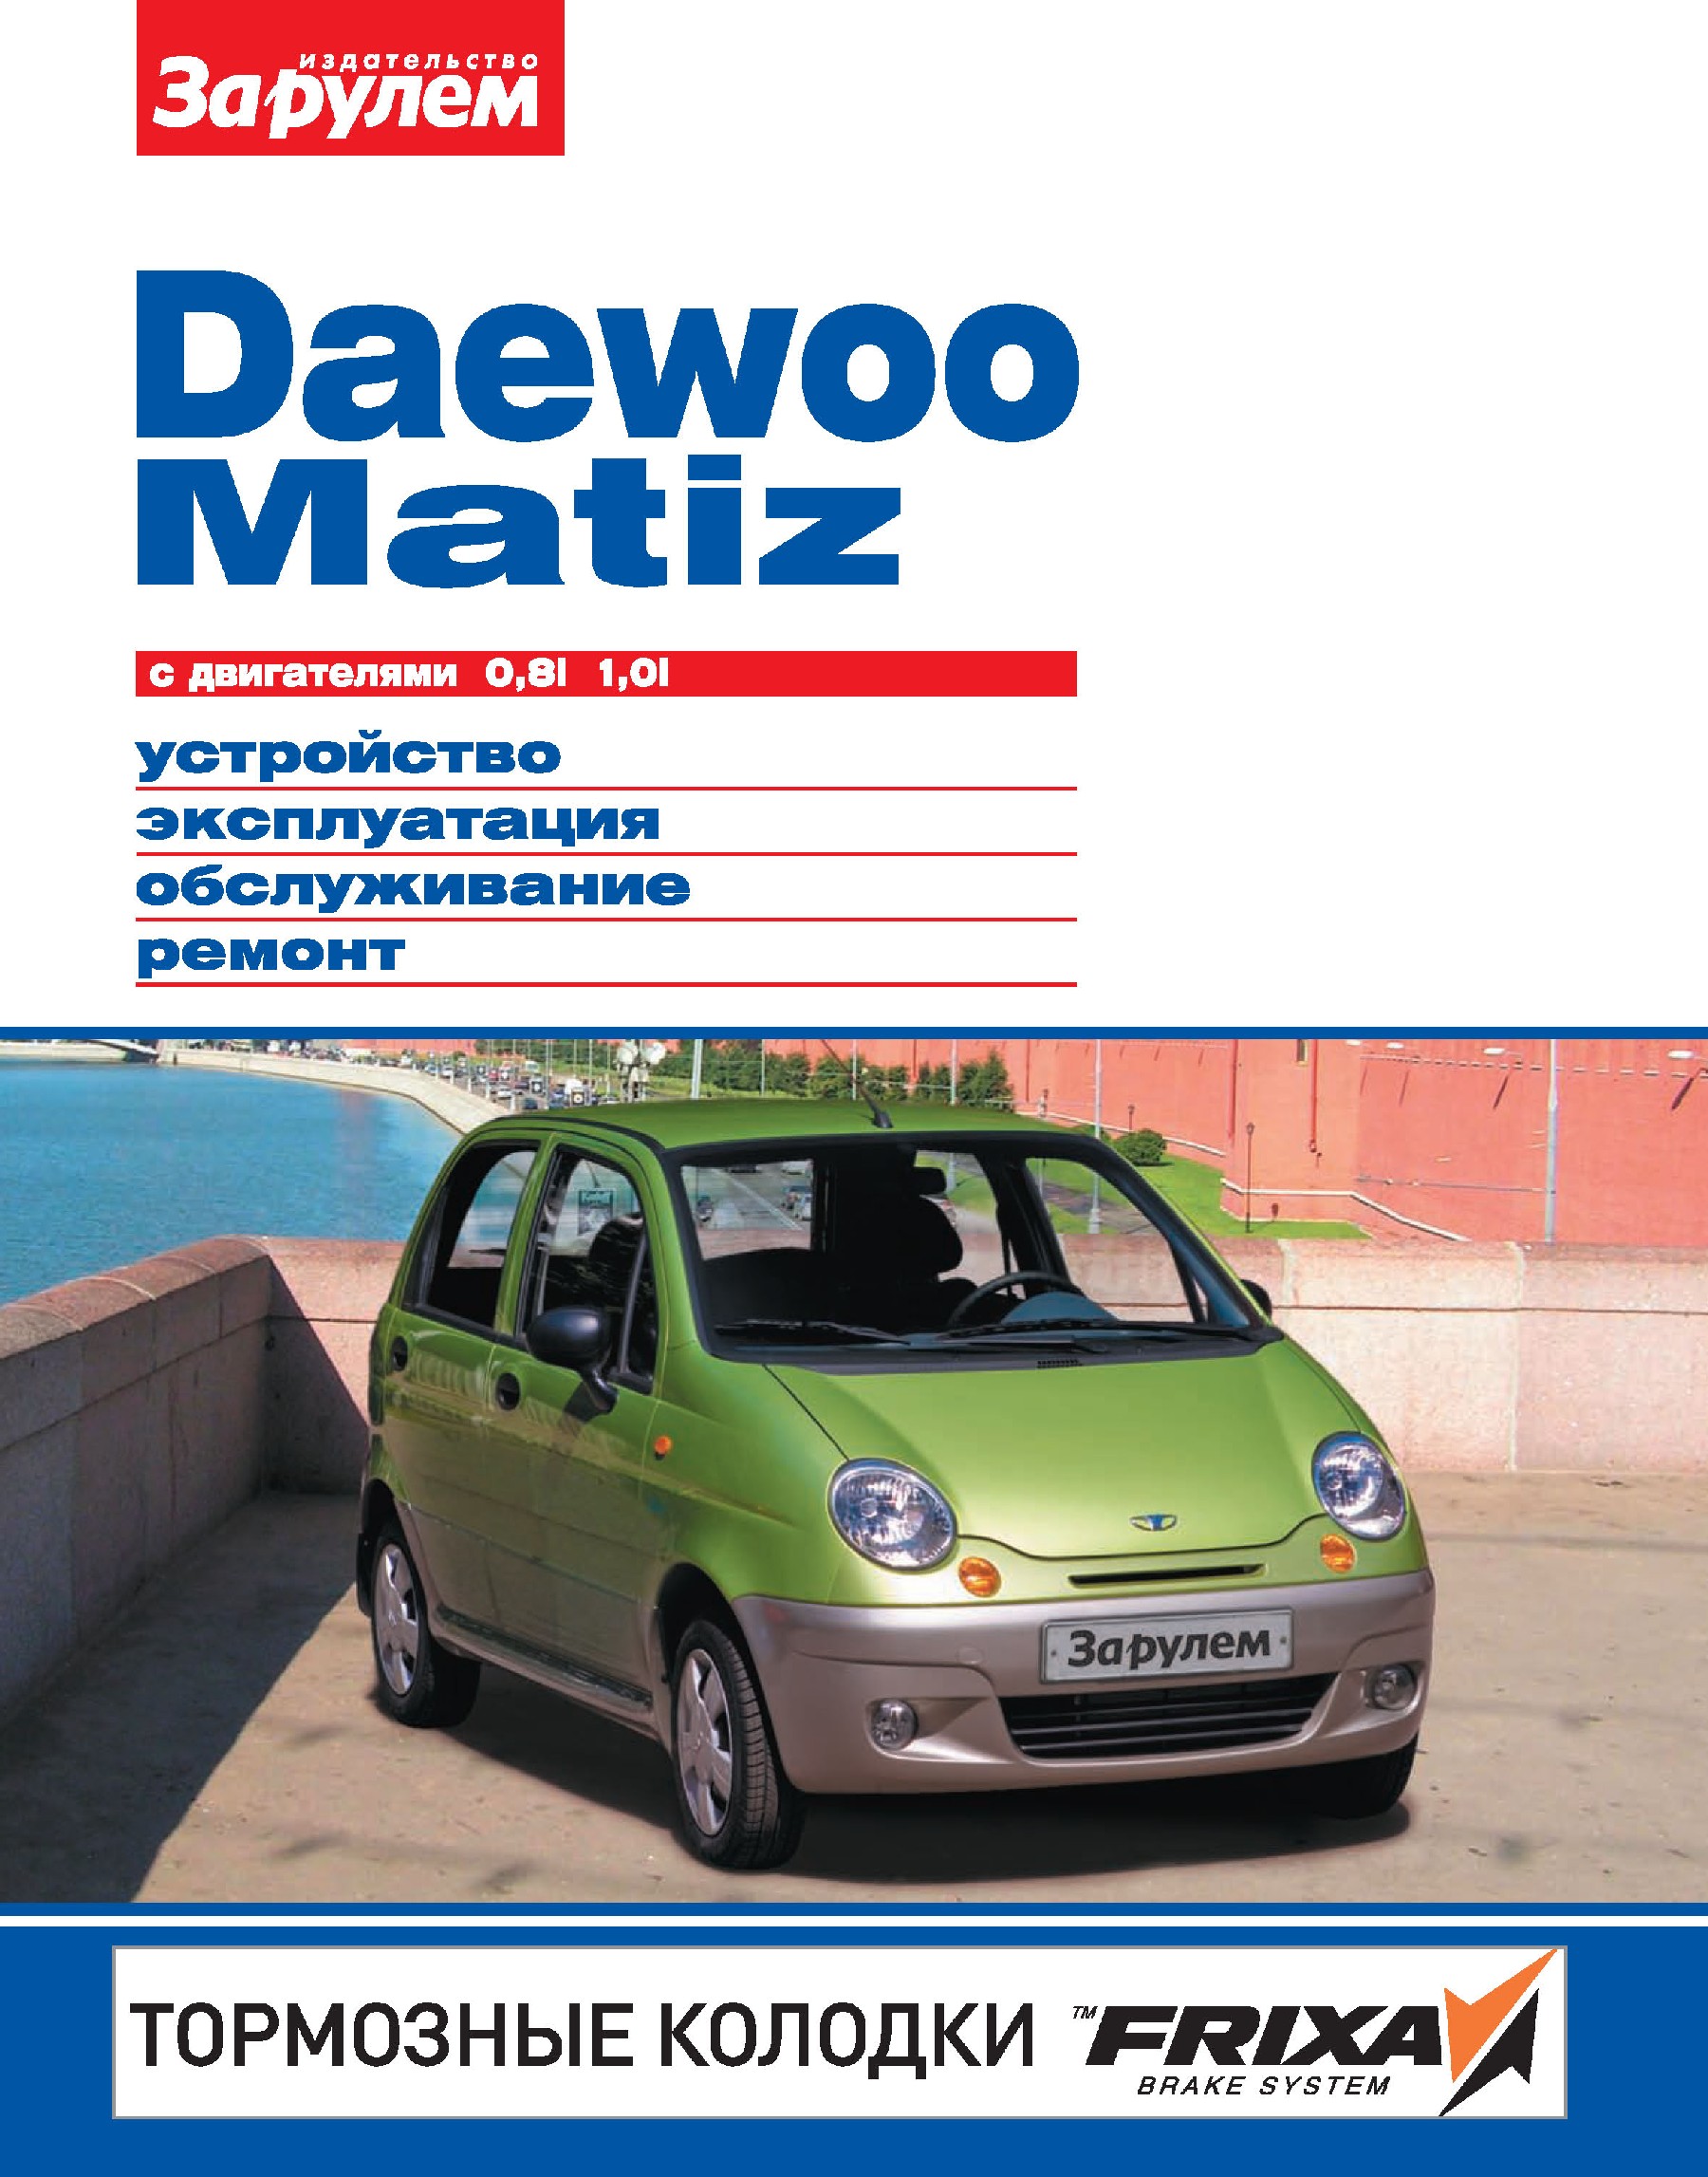 Daewoo Matizс двигателями 0,8i, 1,0i. Устройство, эксплуатация, обслуживание, ремонт. Иллюстрированное руководство.